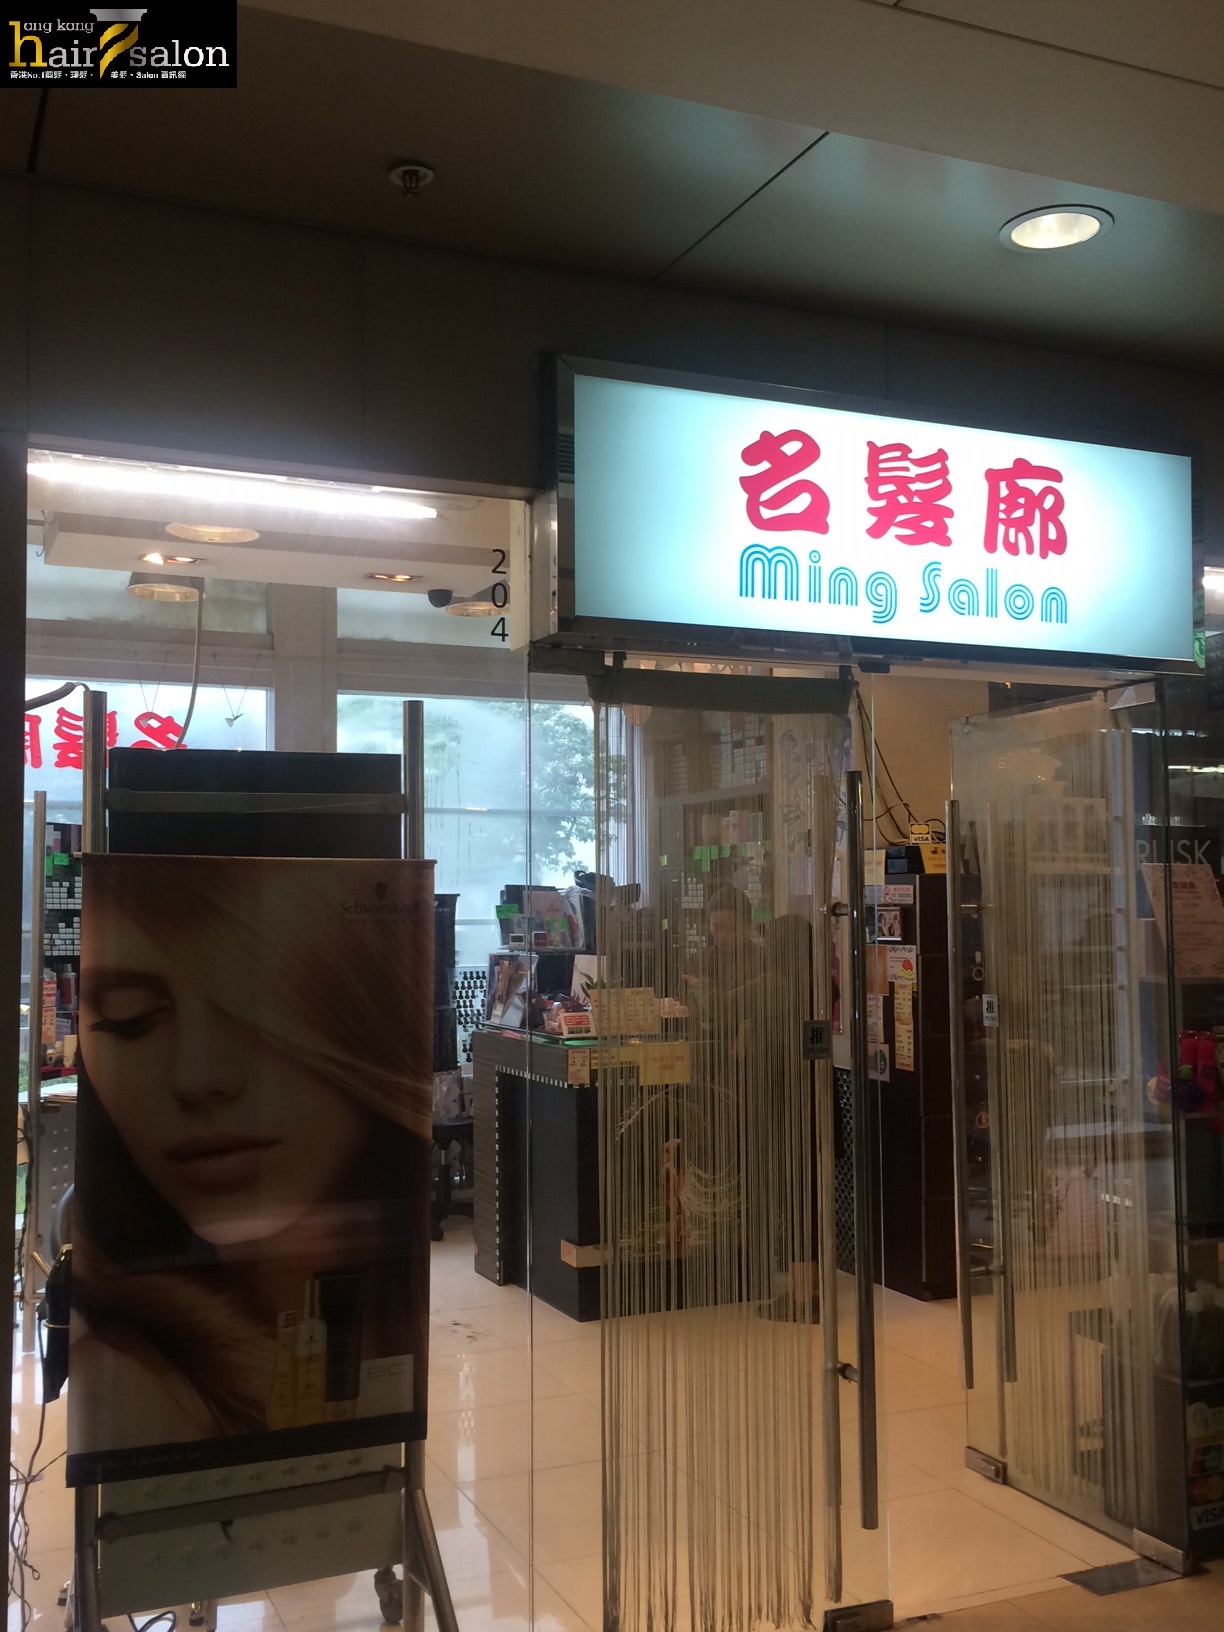 髮型屋: 名髮廊 Ming Salon (葵涌店)